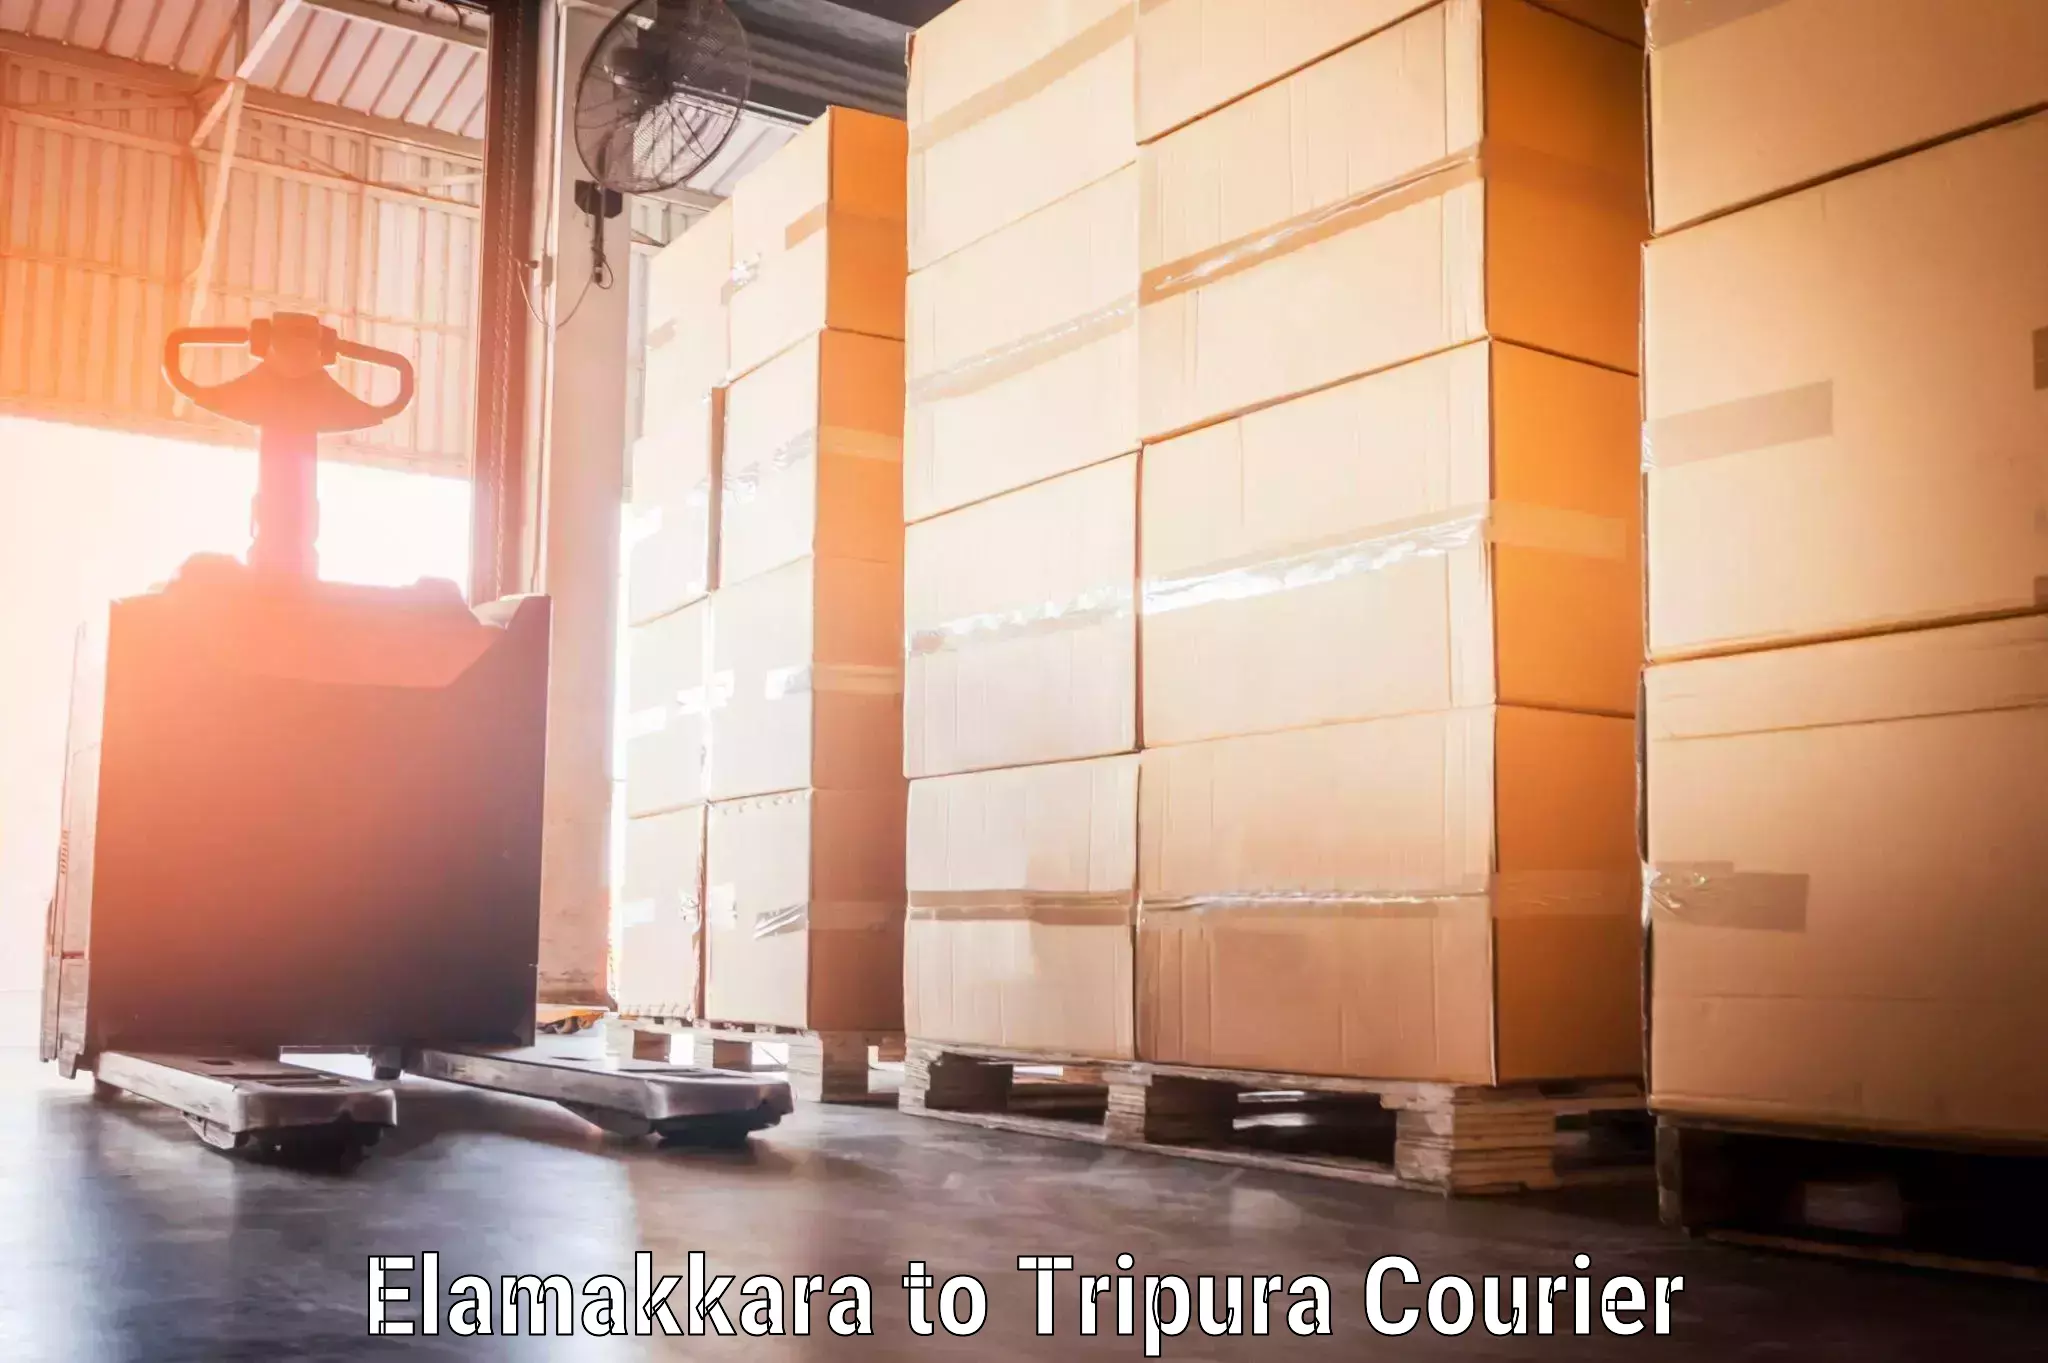 Rural baggage transport Elamakkara to Tripura